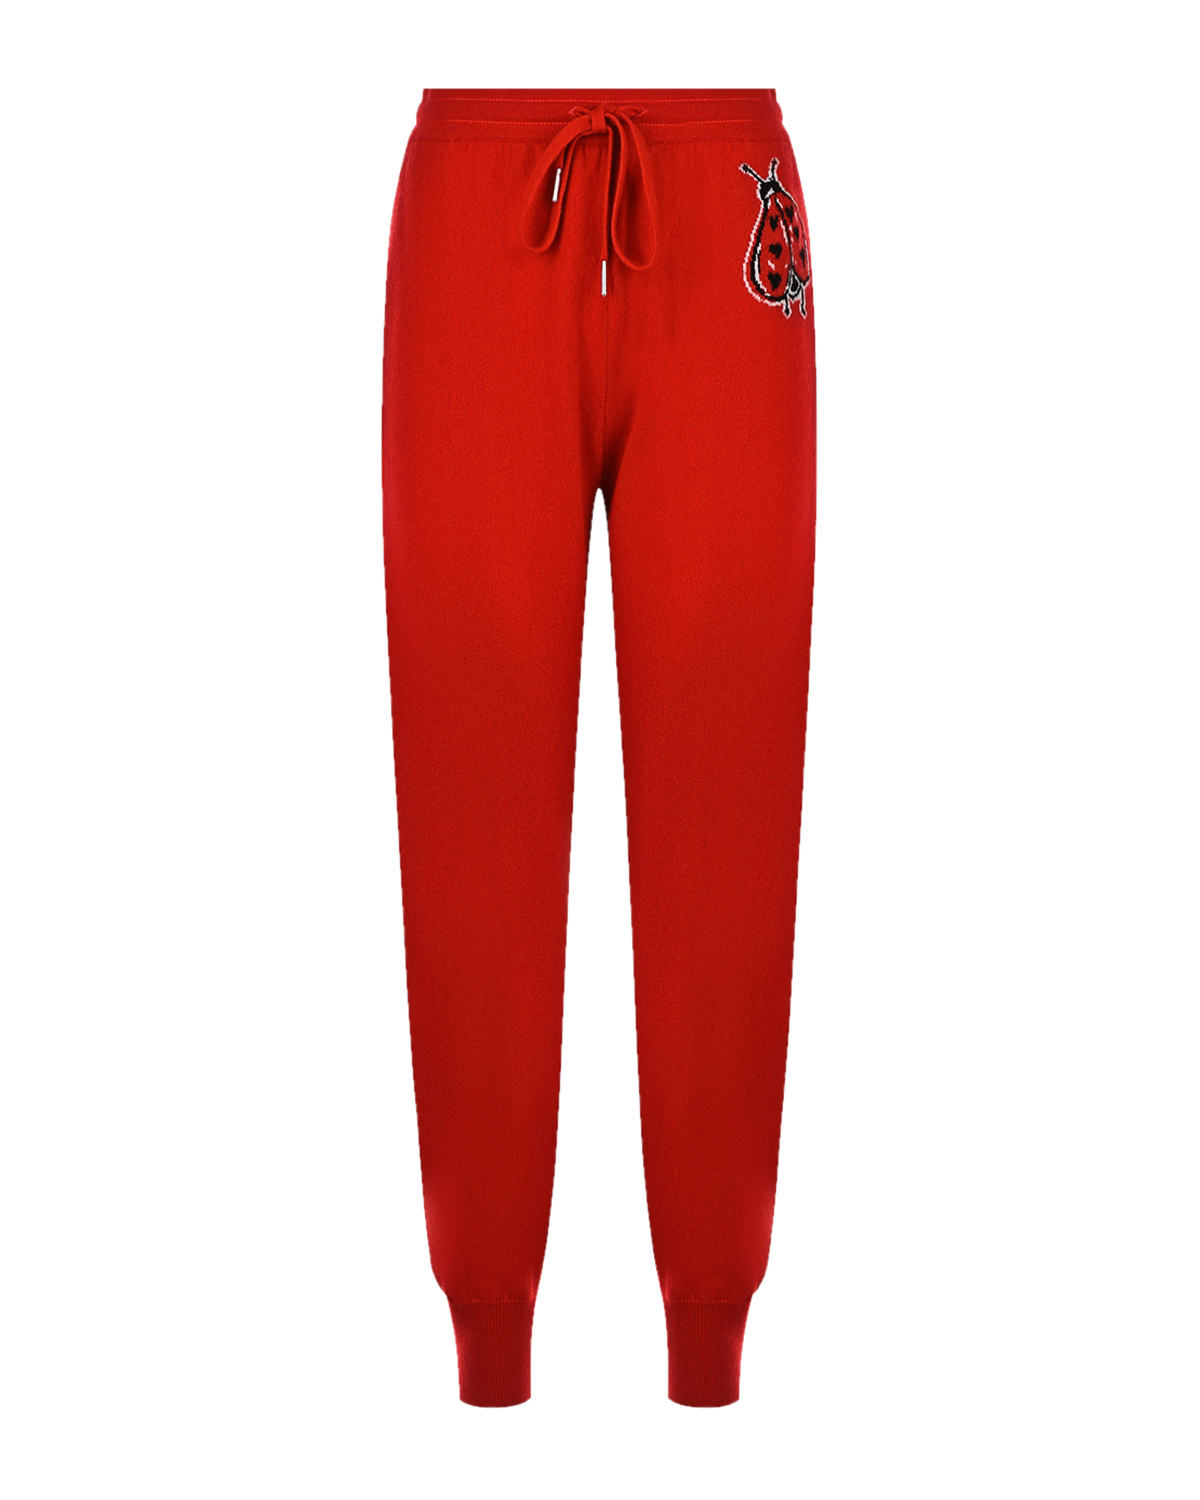 Красные спортивные брюки из кашемира Markus Lupfer, размер 40, цвет красный - фото 1